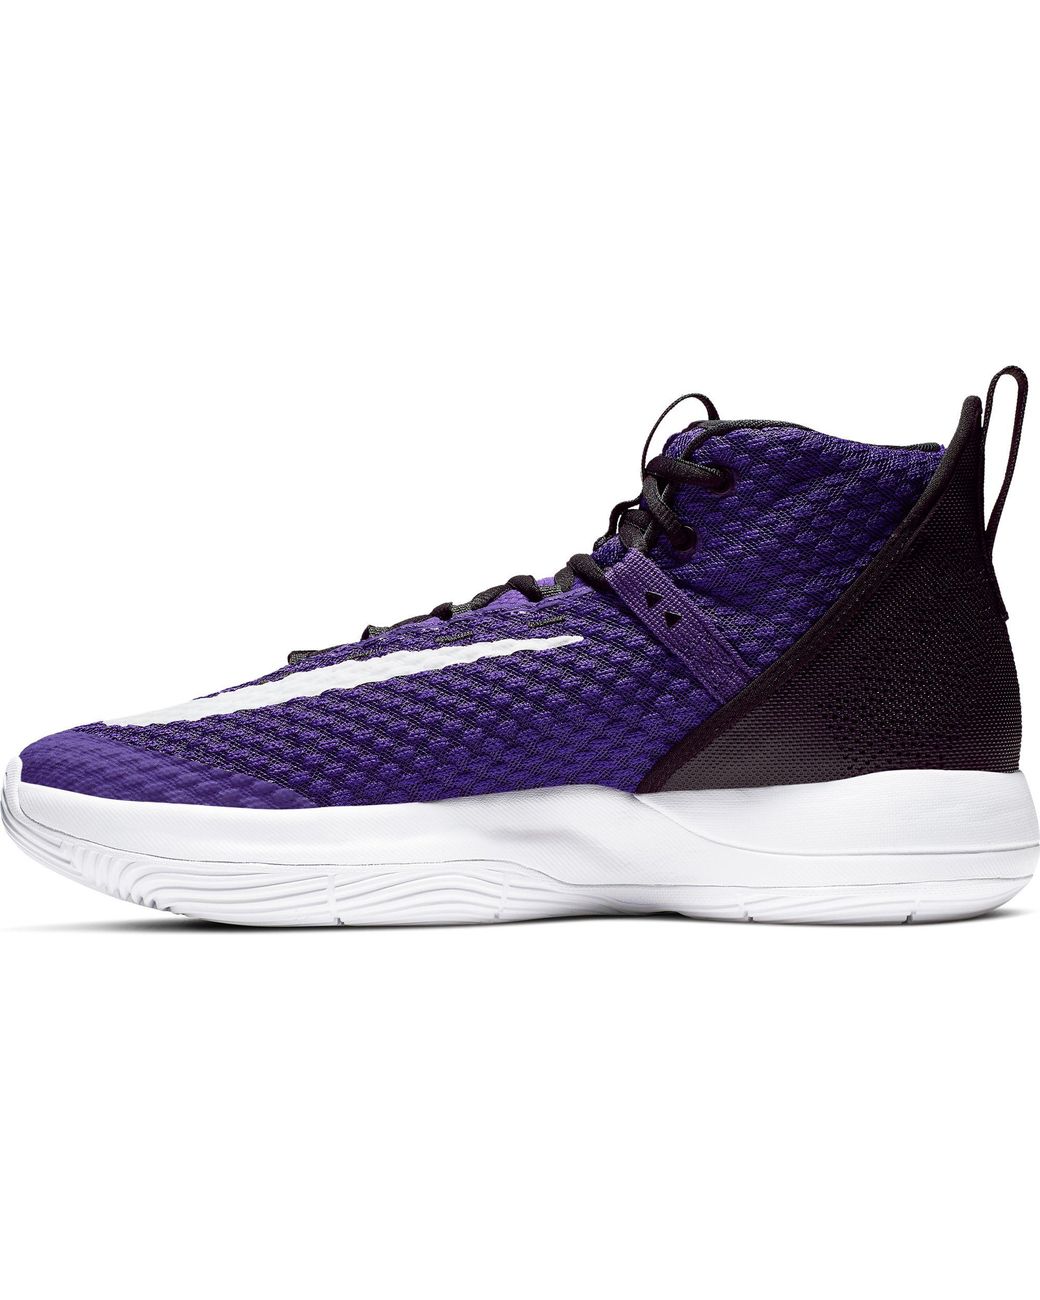 nike zoom rize basketball shoes purple